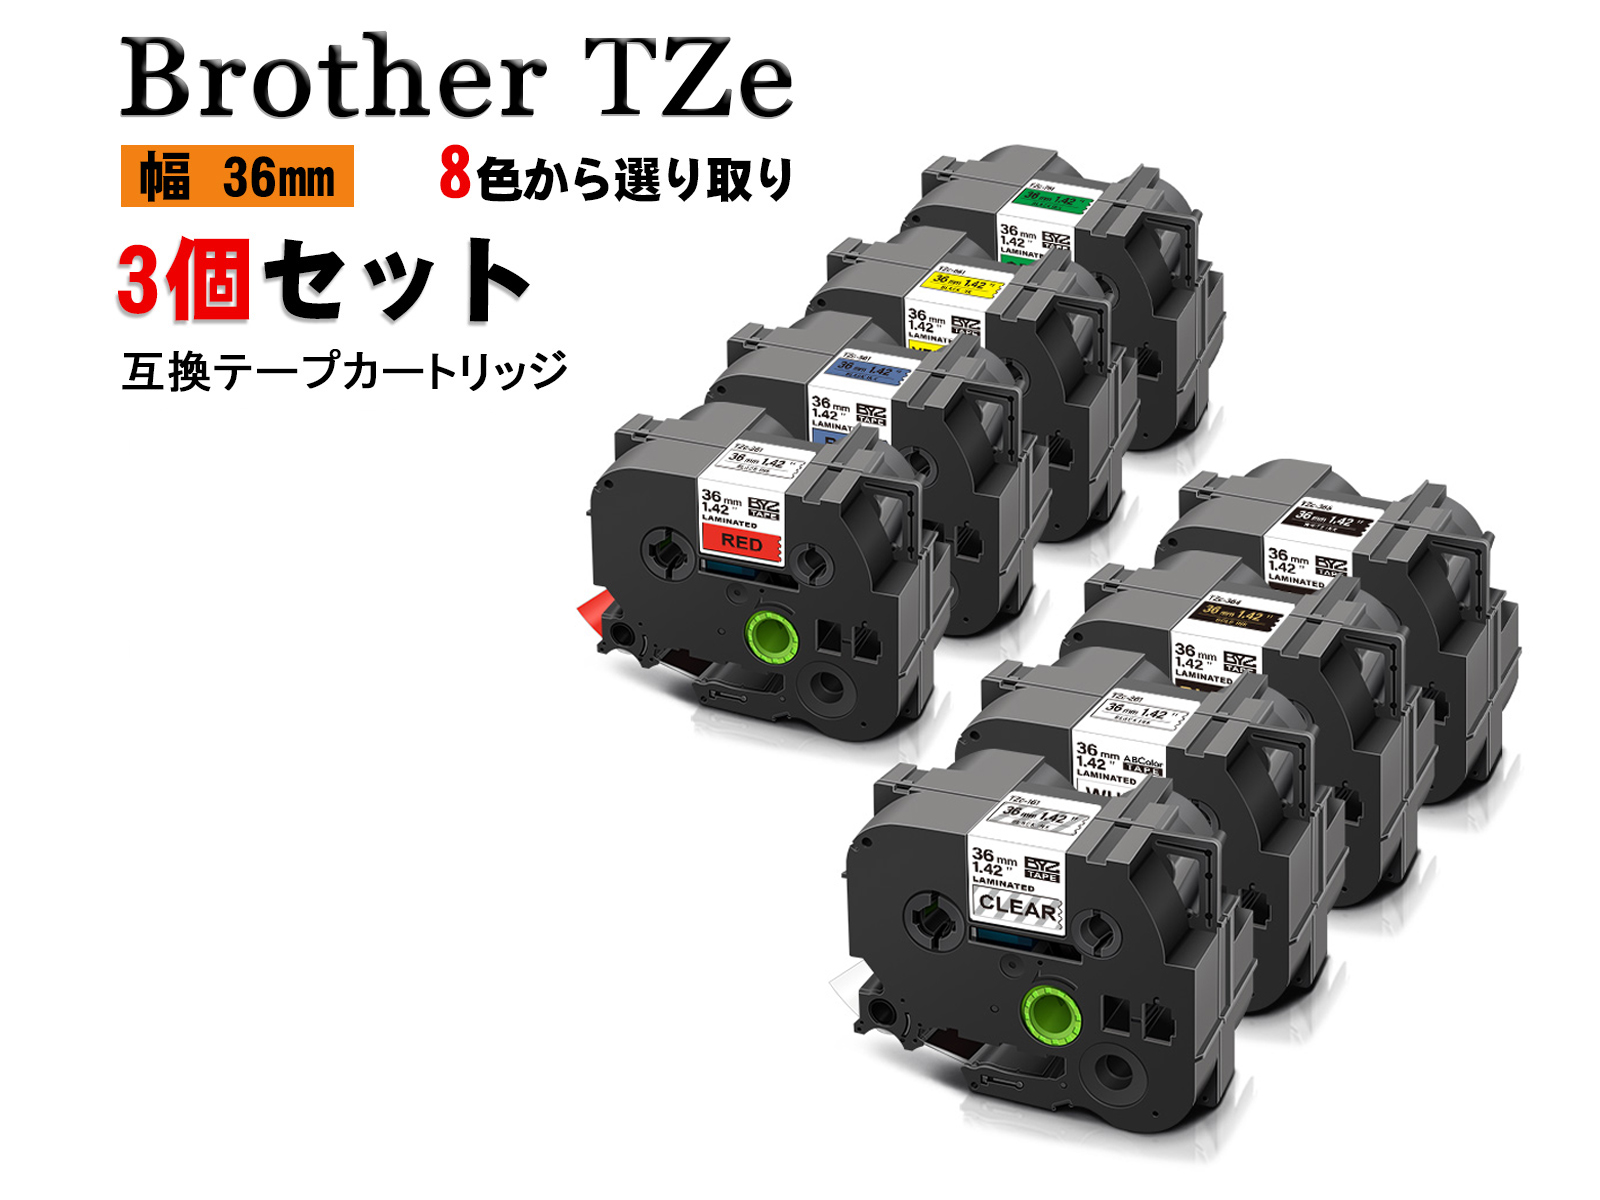 P-touch ピータッチ ブラザー TZe互換ラベルテープ12mm 白黒3個